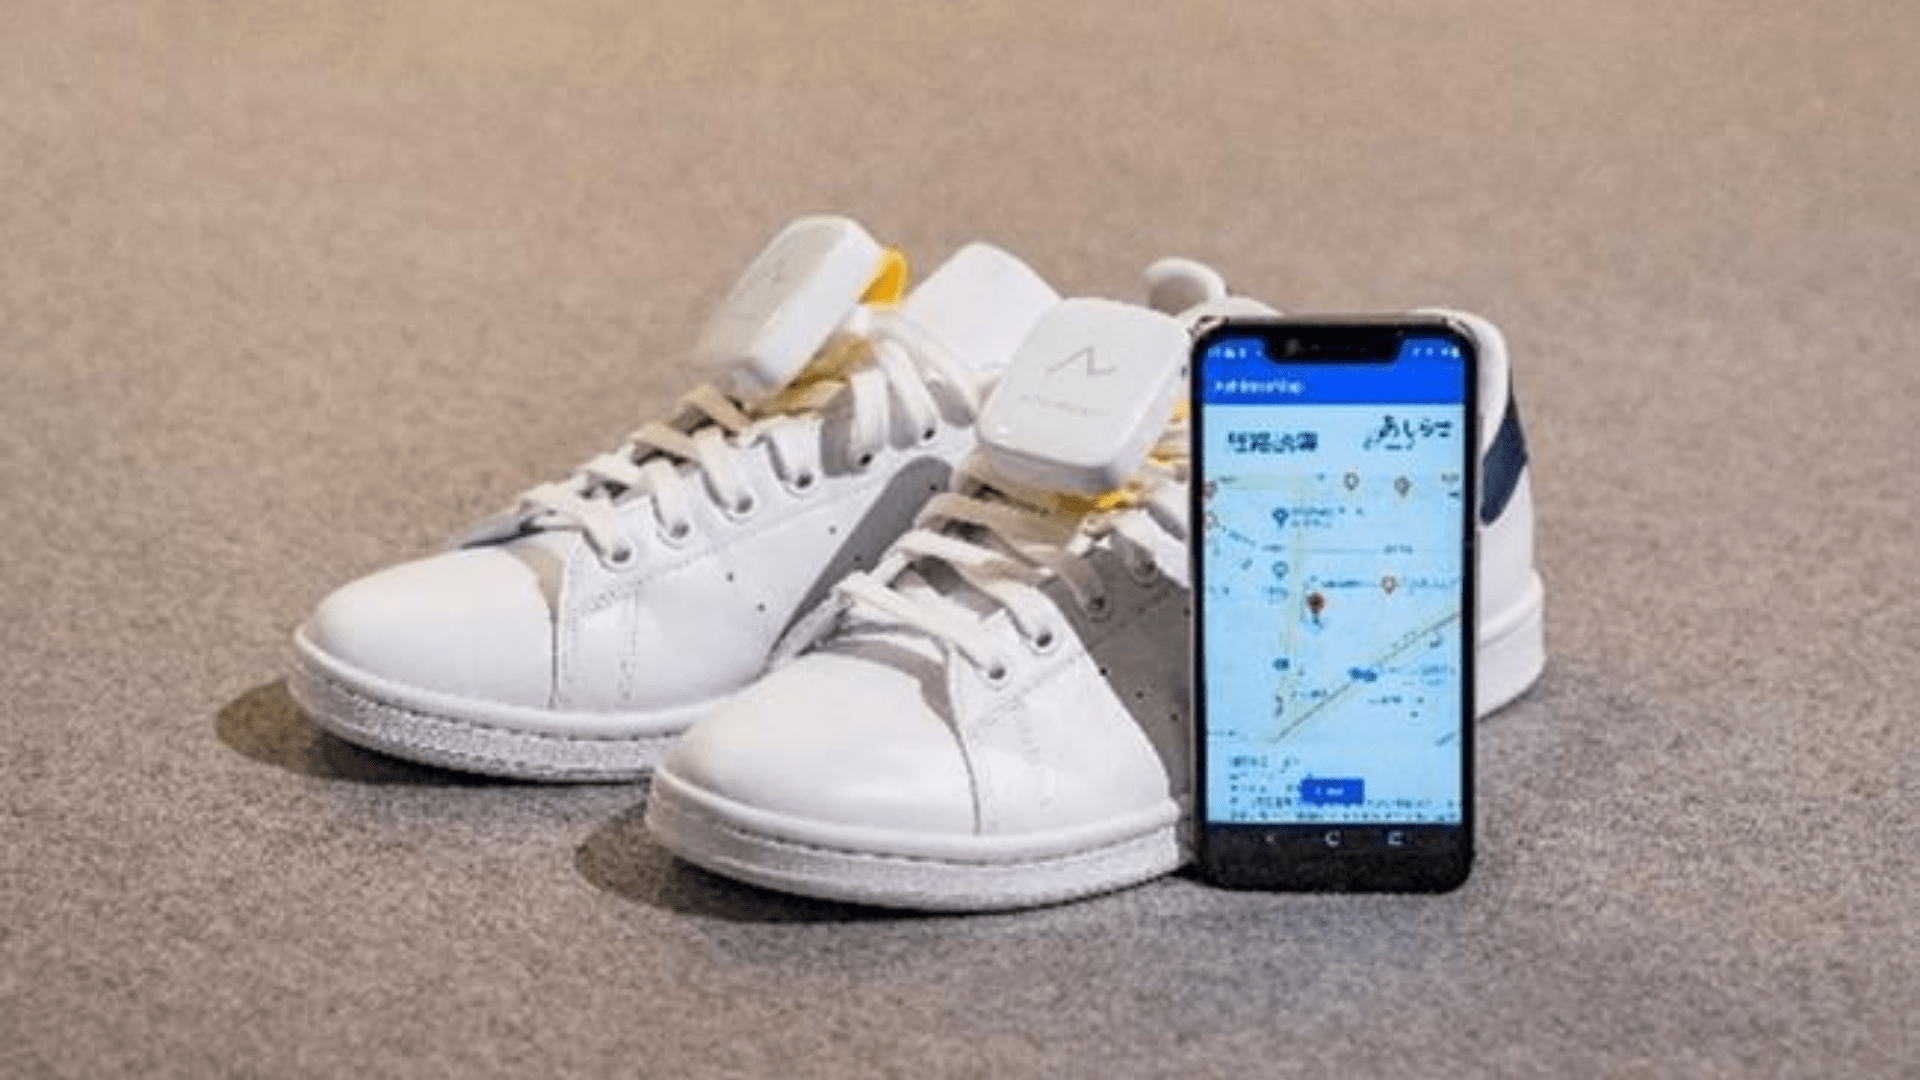 Honda crea un sistema de navegación GPS para sus zapatos